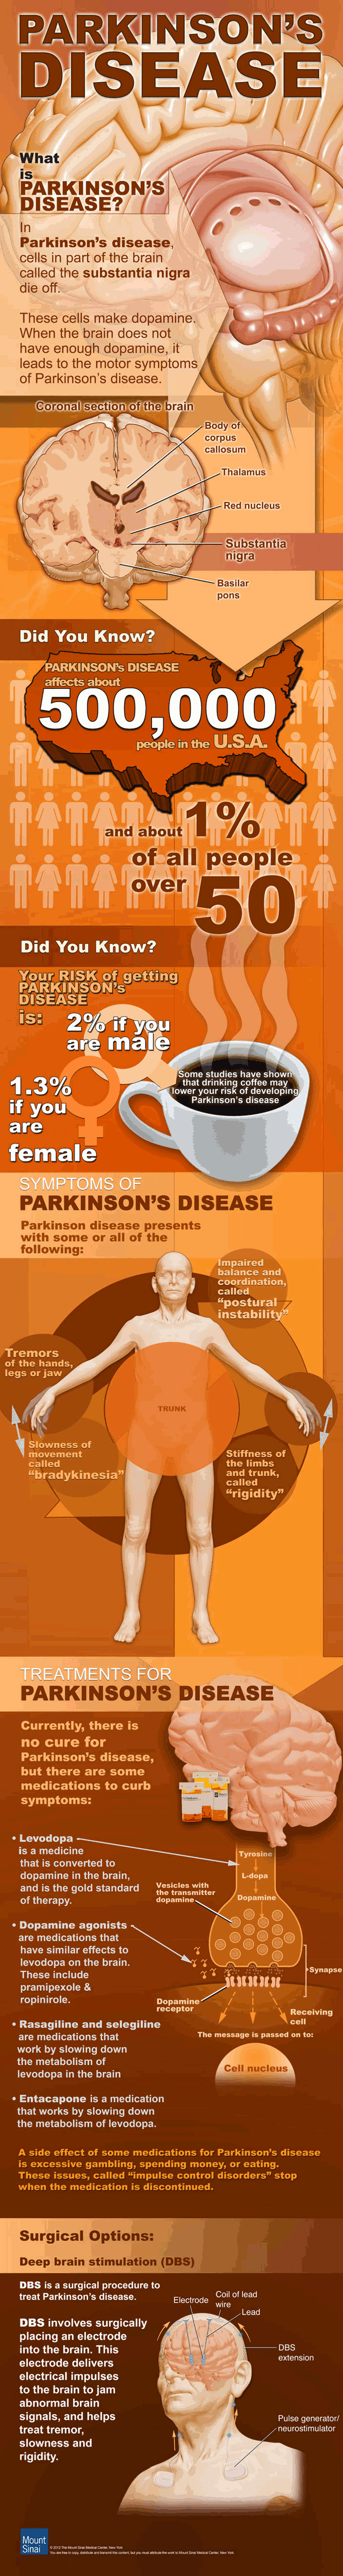 What Is Parkinsons Disease